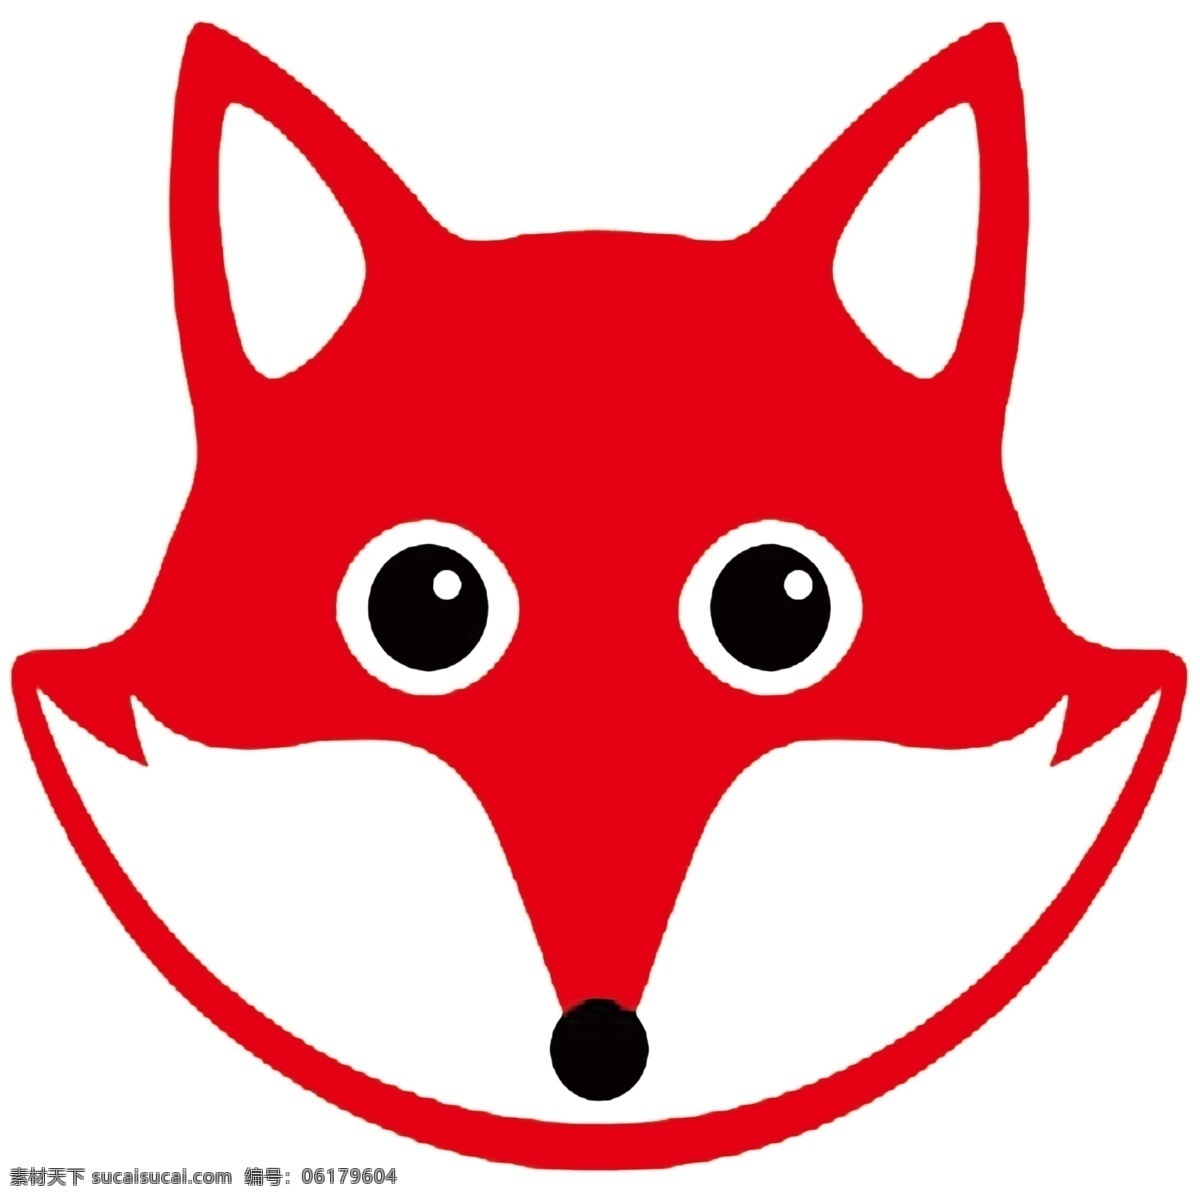 狐狸面具 小狐狸 狐狸 狐狸插画面具 可爱狐狸